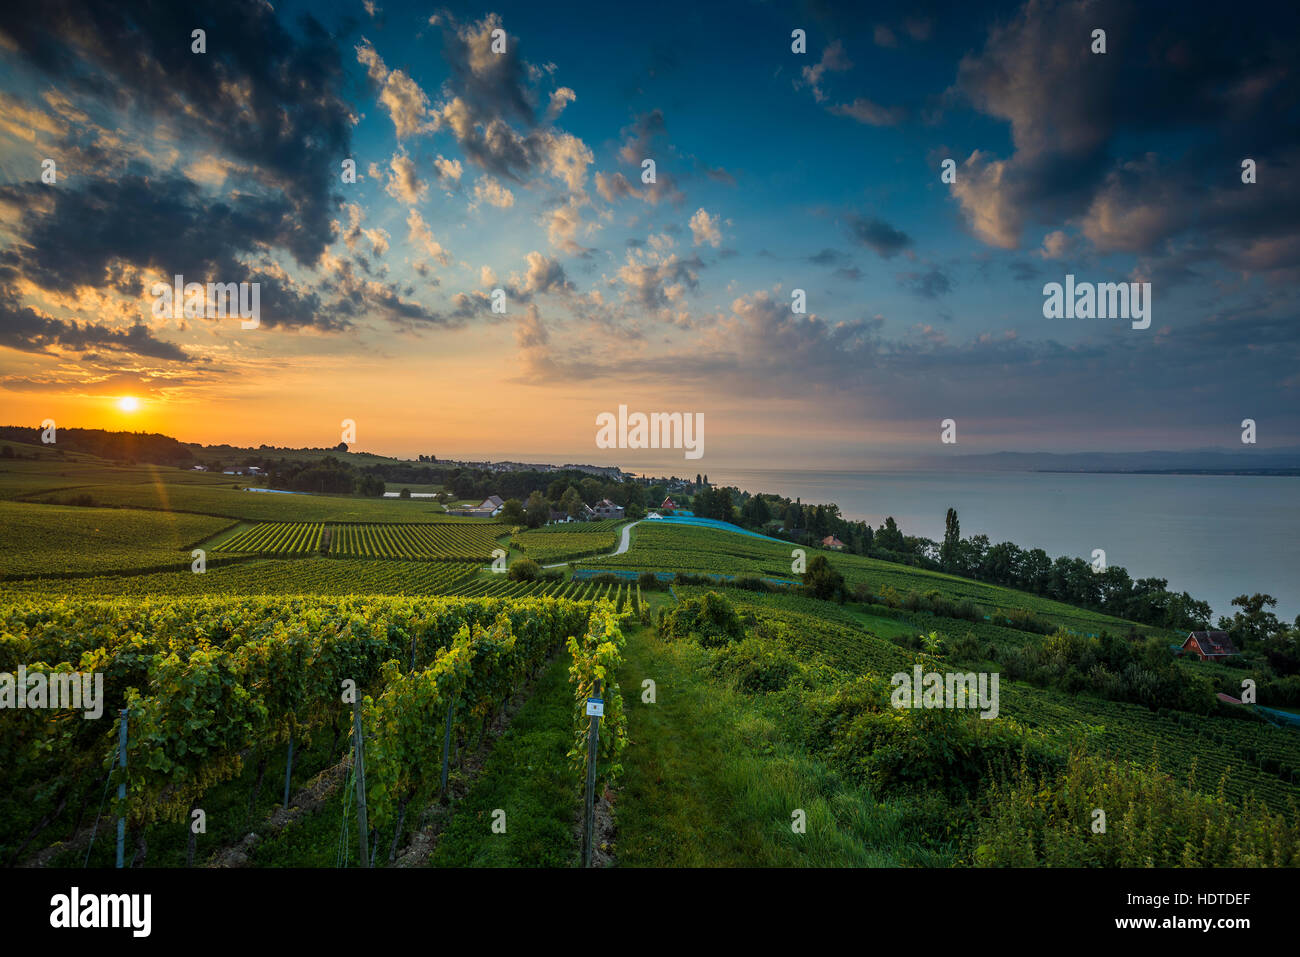 Entre viñedos y Hagnau Meersburg, amanecer, cielo nublado, el lago de Constanza, en el Estado federado de Baden-Württemberg, Alemania Foto de stock